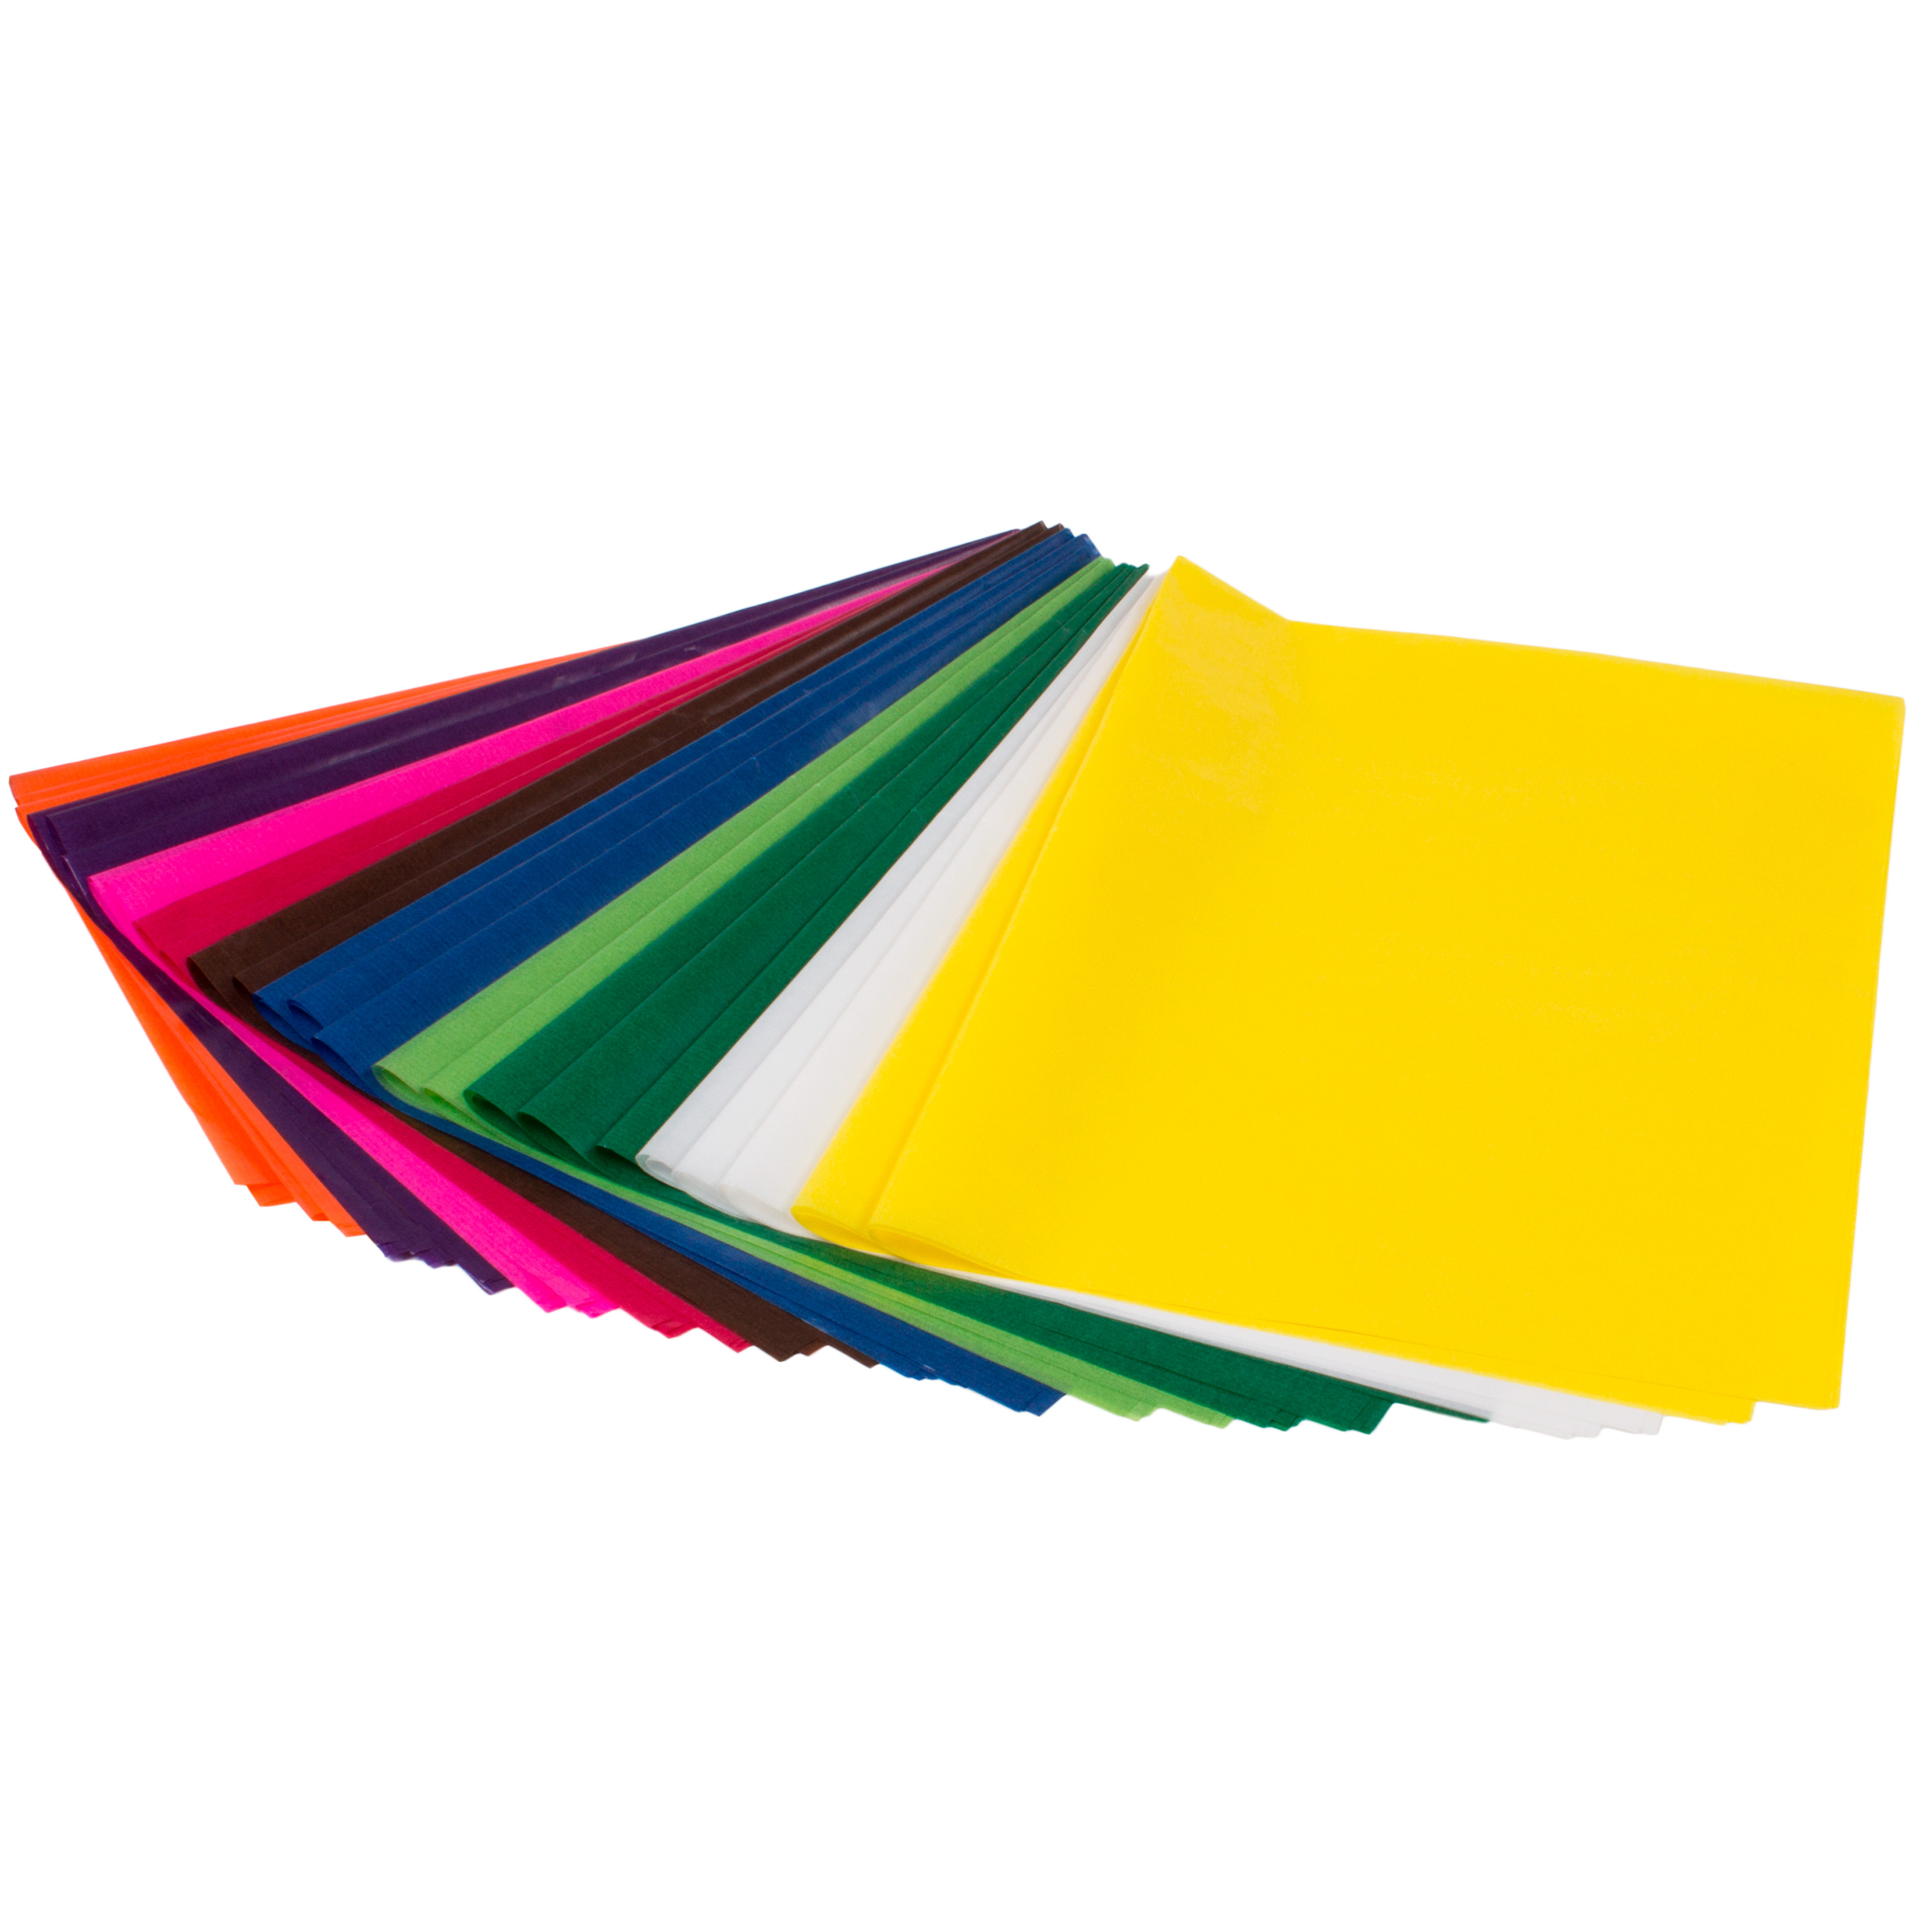 Transparentpapier farbig sortiert, 42 g/m², 25 Bögen